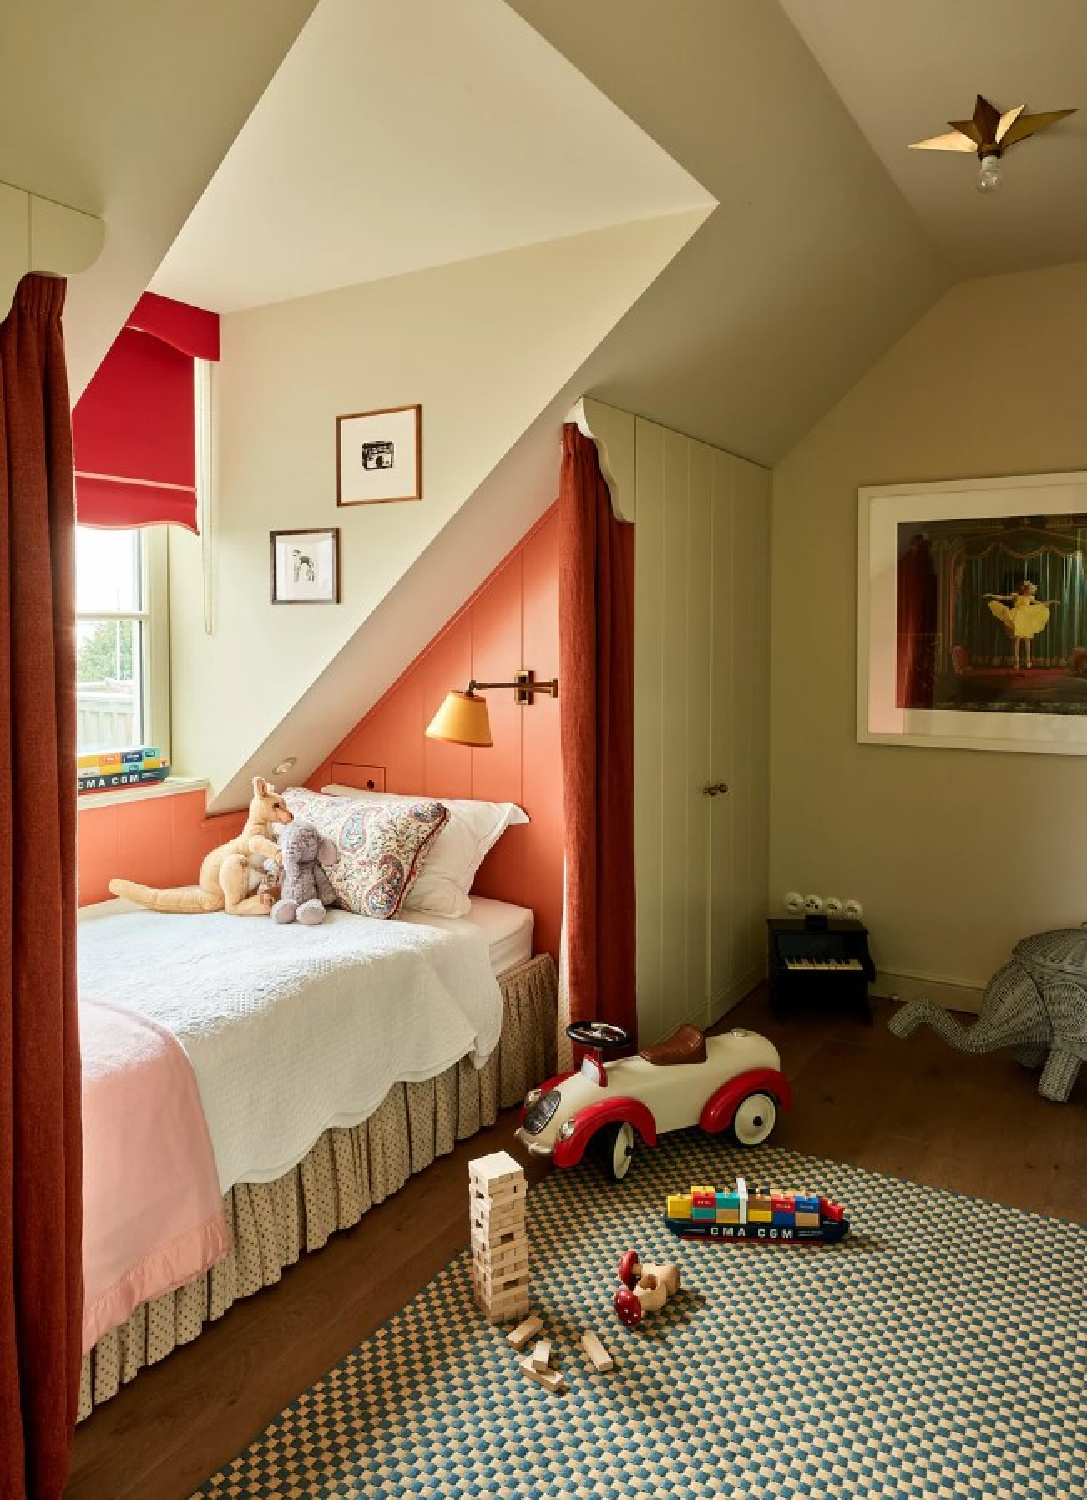 Lindo quarto infantil - foto de Robert Reiger e designer de interiores Beata Human.  #beataheuman #swedishfarmhouse